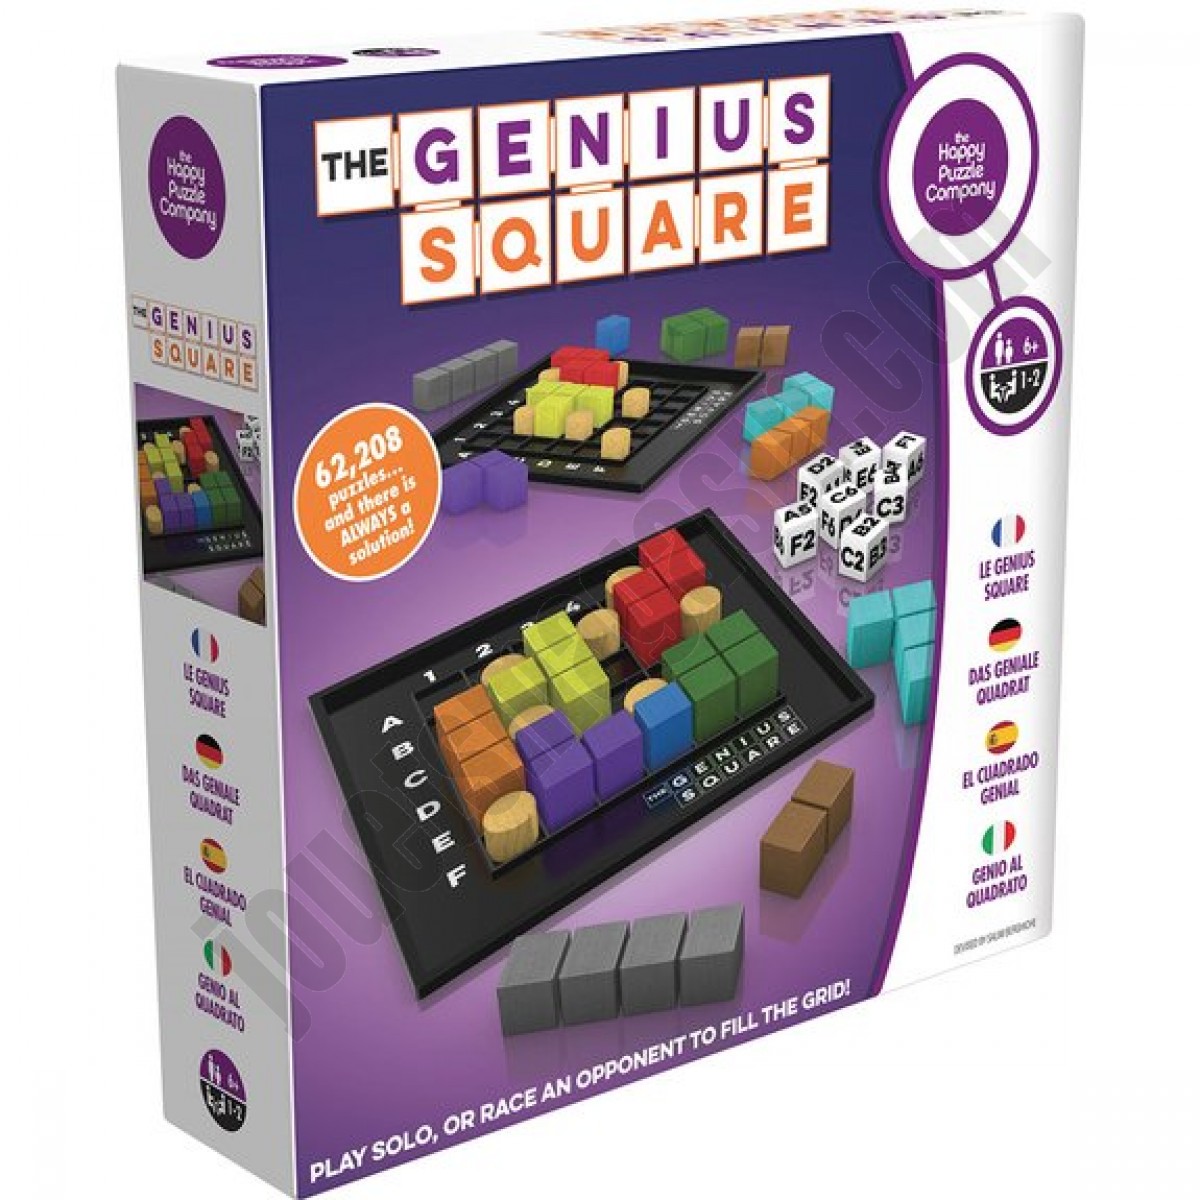 The genius square - déstockage - The genius square - déstockage